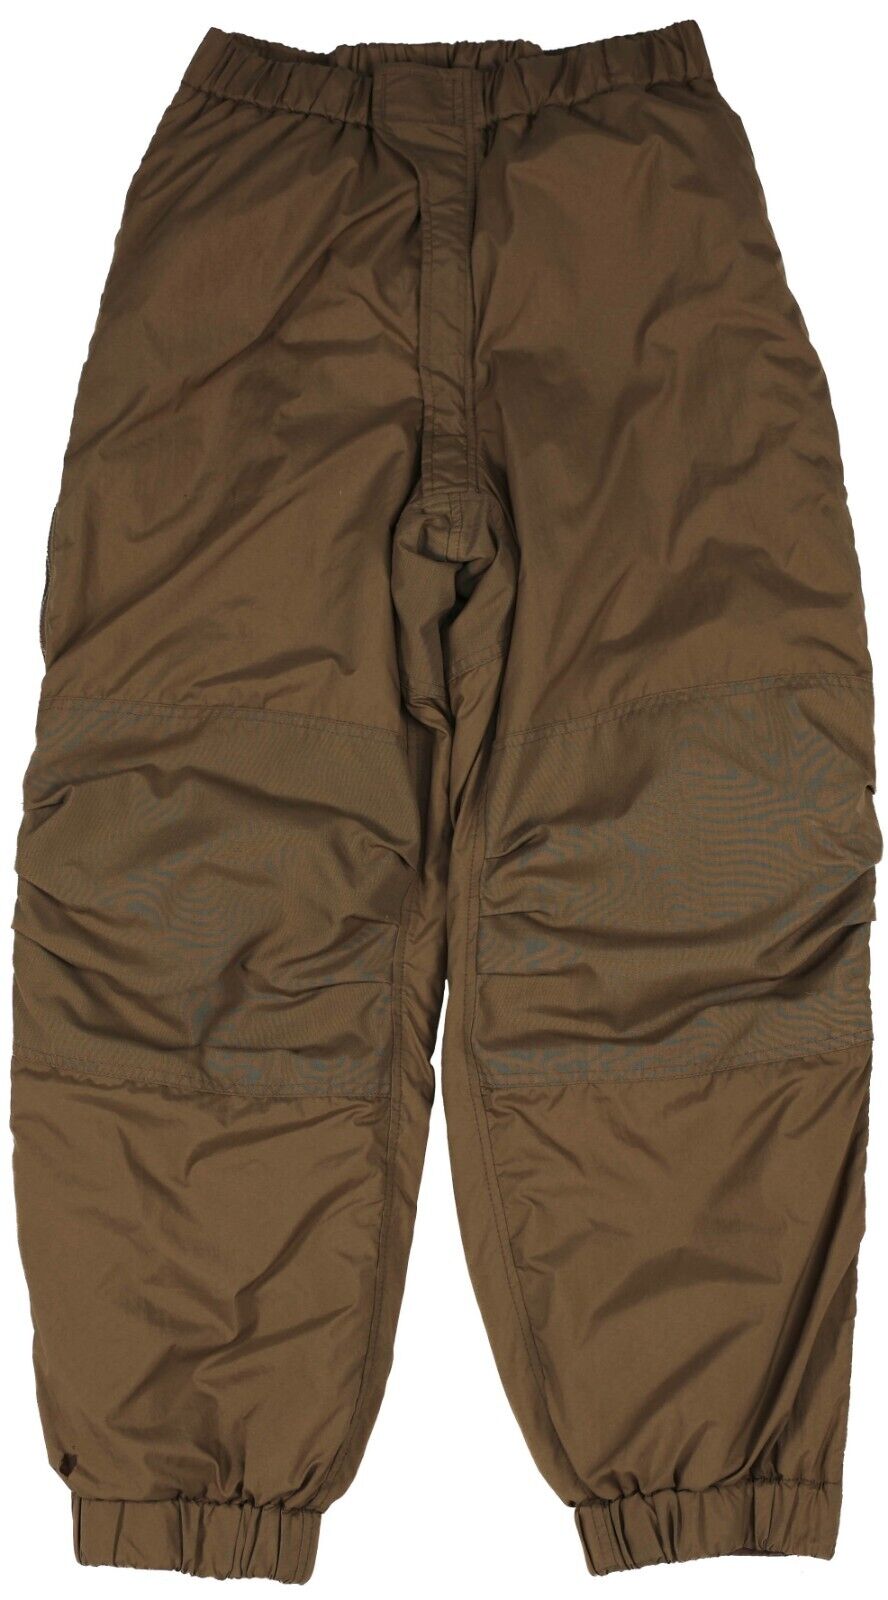 Medium Long - USMC Extreme Cold Weather Trousers Happy Suit Primaloft Pants Snow